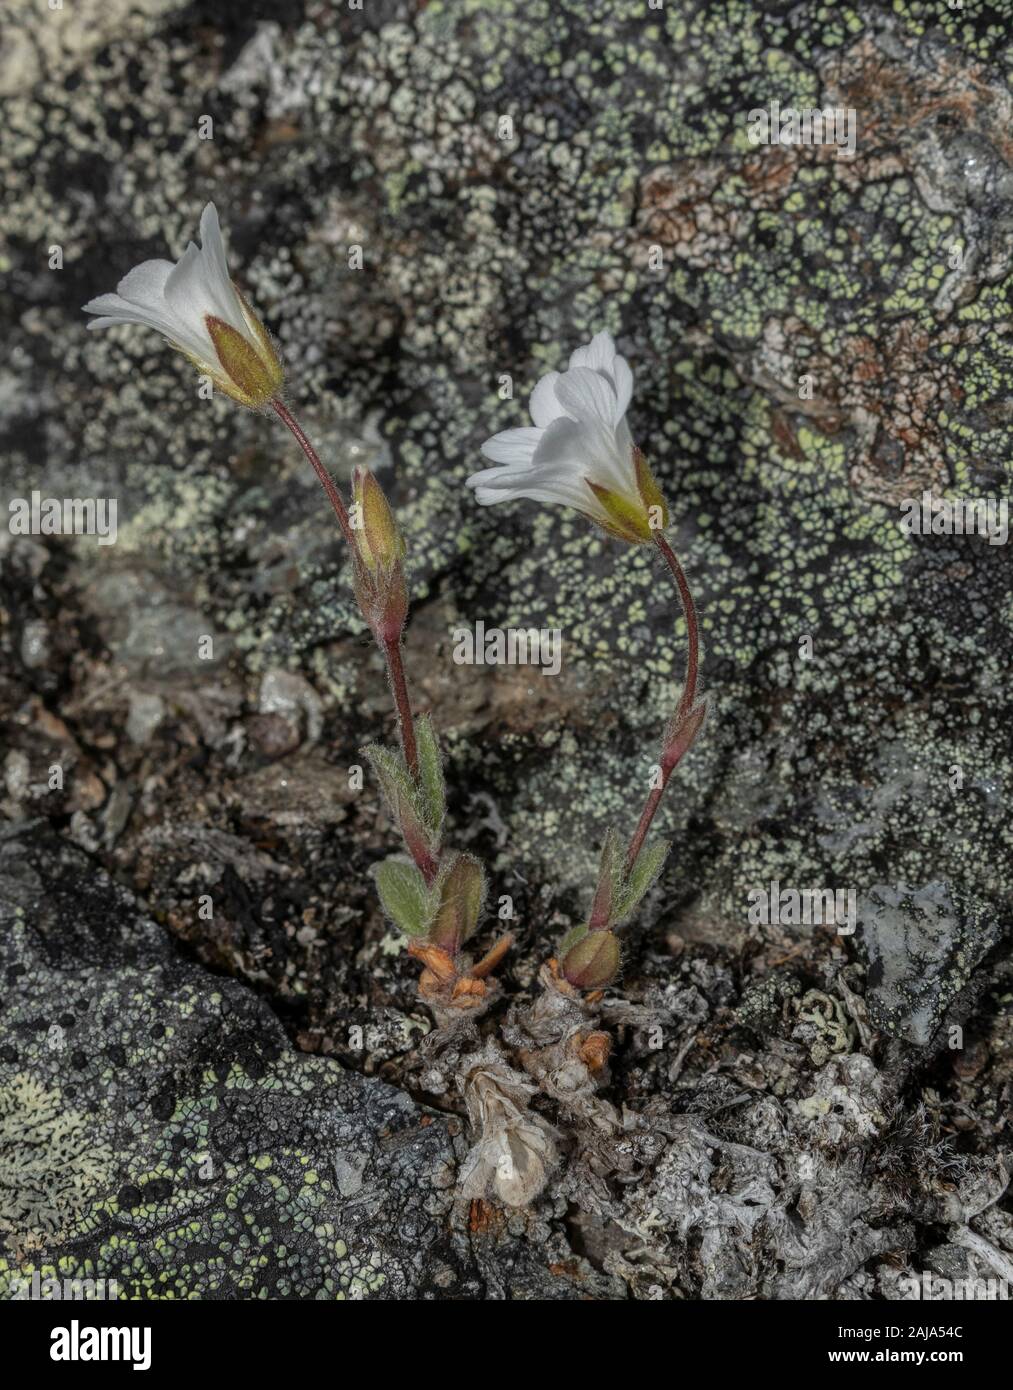 Alpine chickweed, Cerastium alpinum, growing in arctic tundra, Abisko, Sweden. Stock Photo